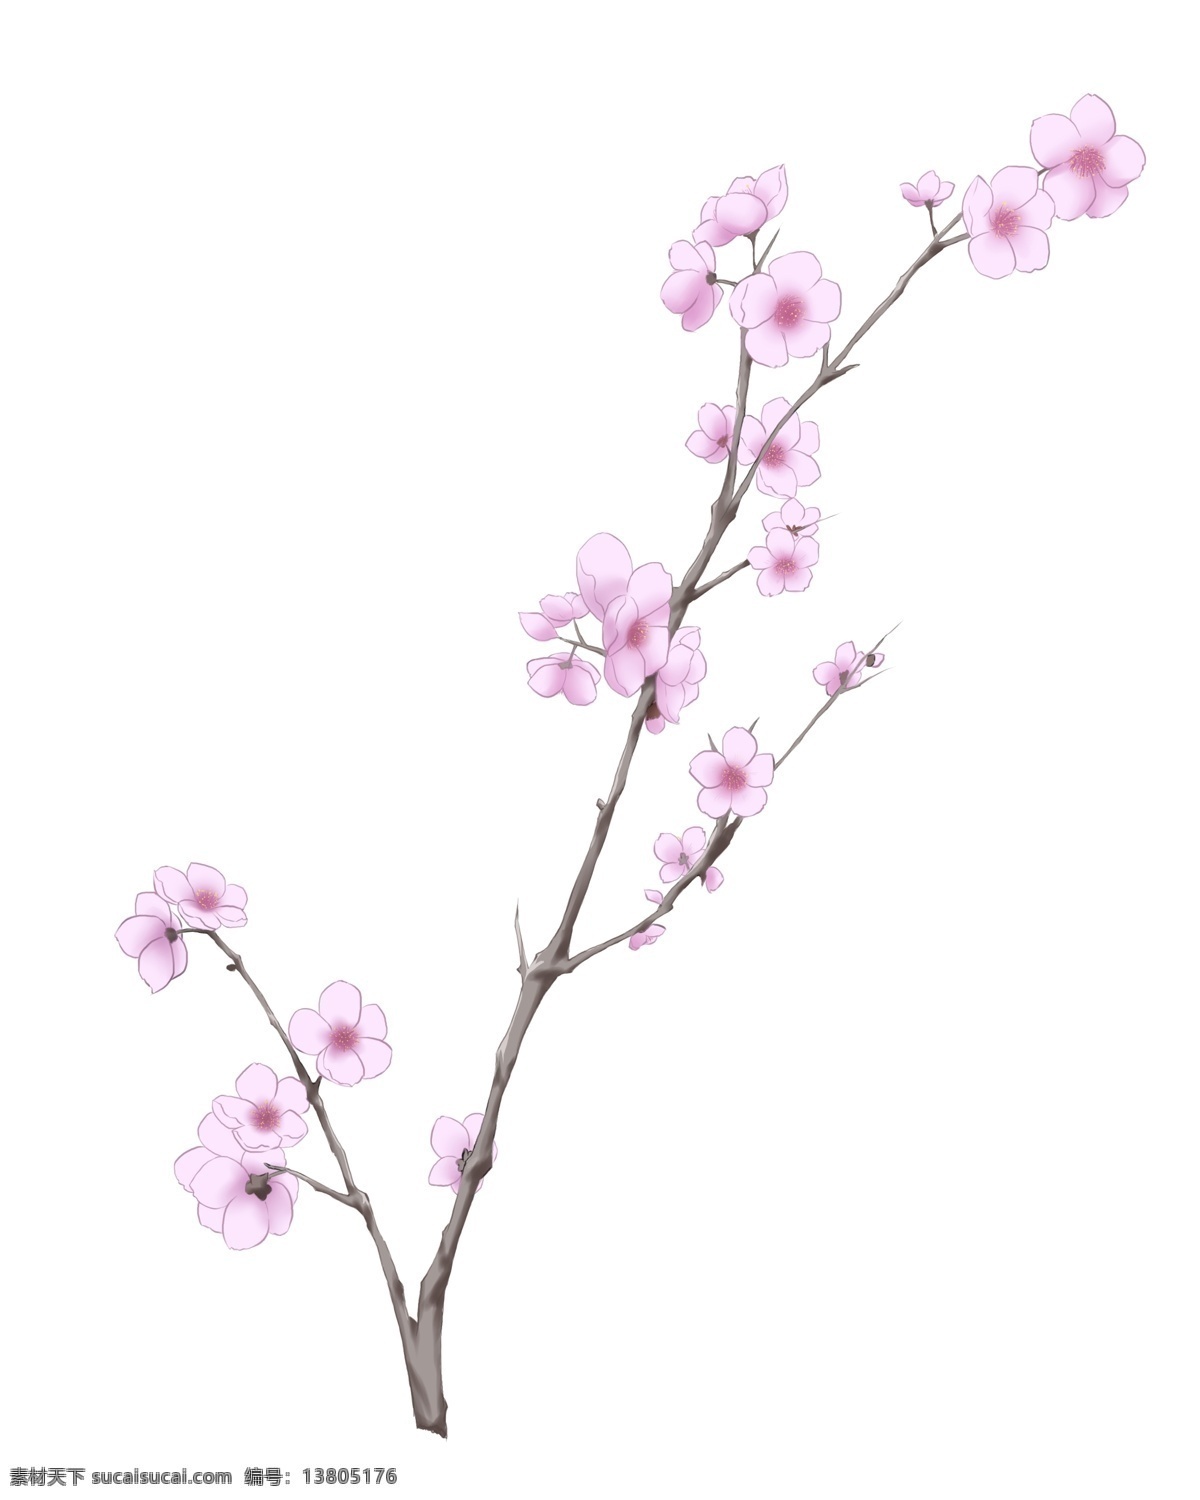 粉白色 花朵 插画 粉色的花朵 漂亮的花朵 美丽的花朵 绽放的花朵 卡通插画 花朵插画 鲜花插画